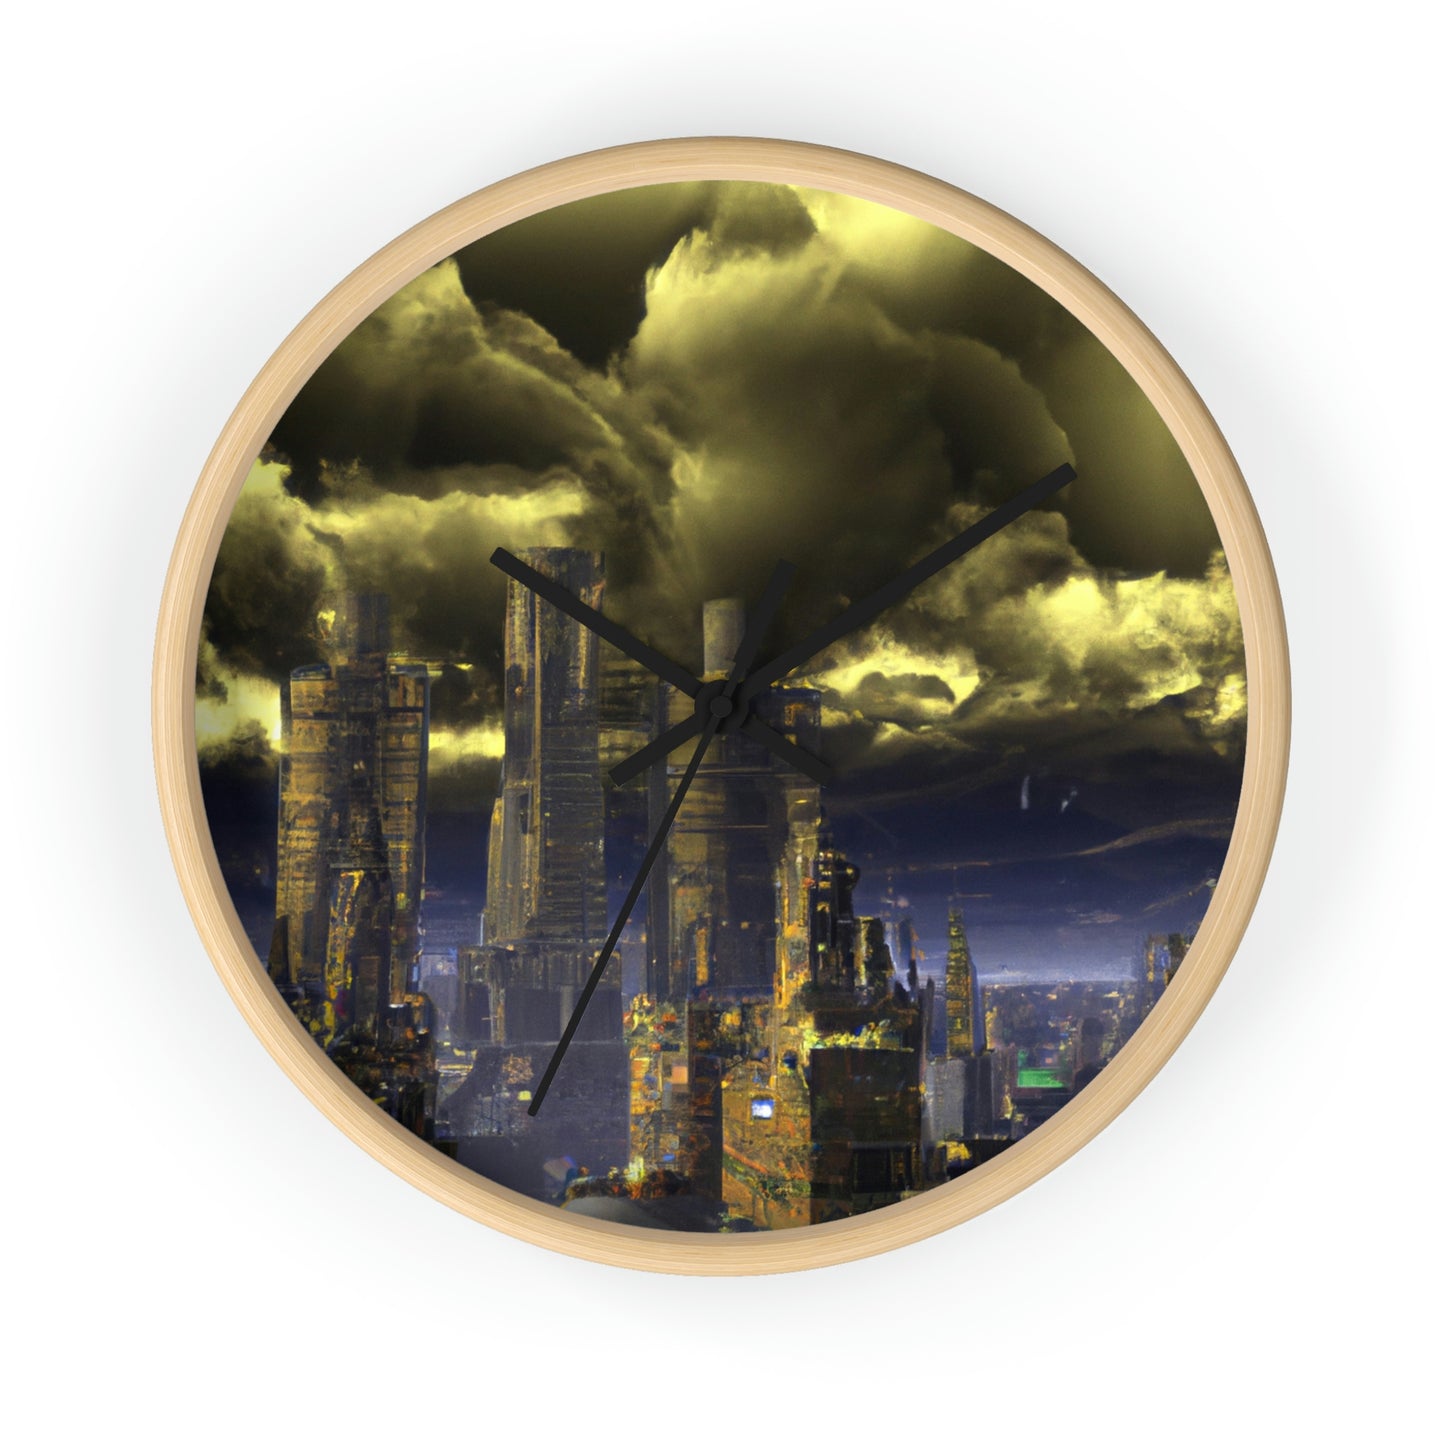 La ciudadela utópica en la tempestad distópica - El reloj de pared alienígena